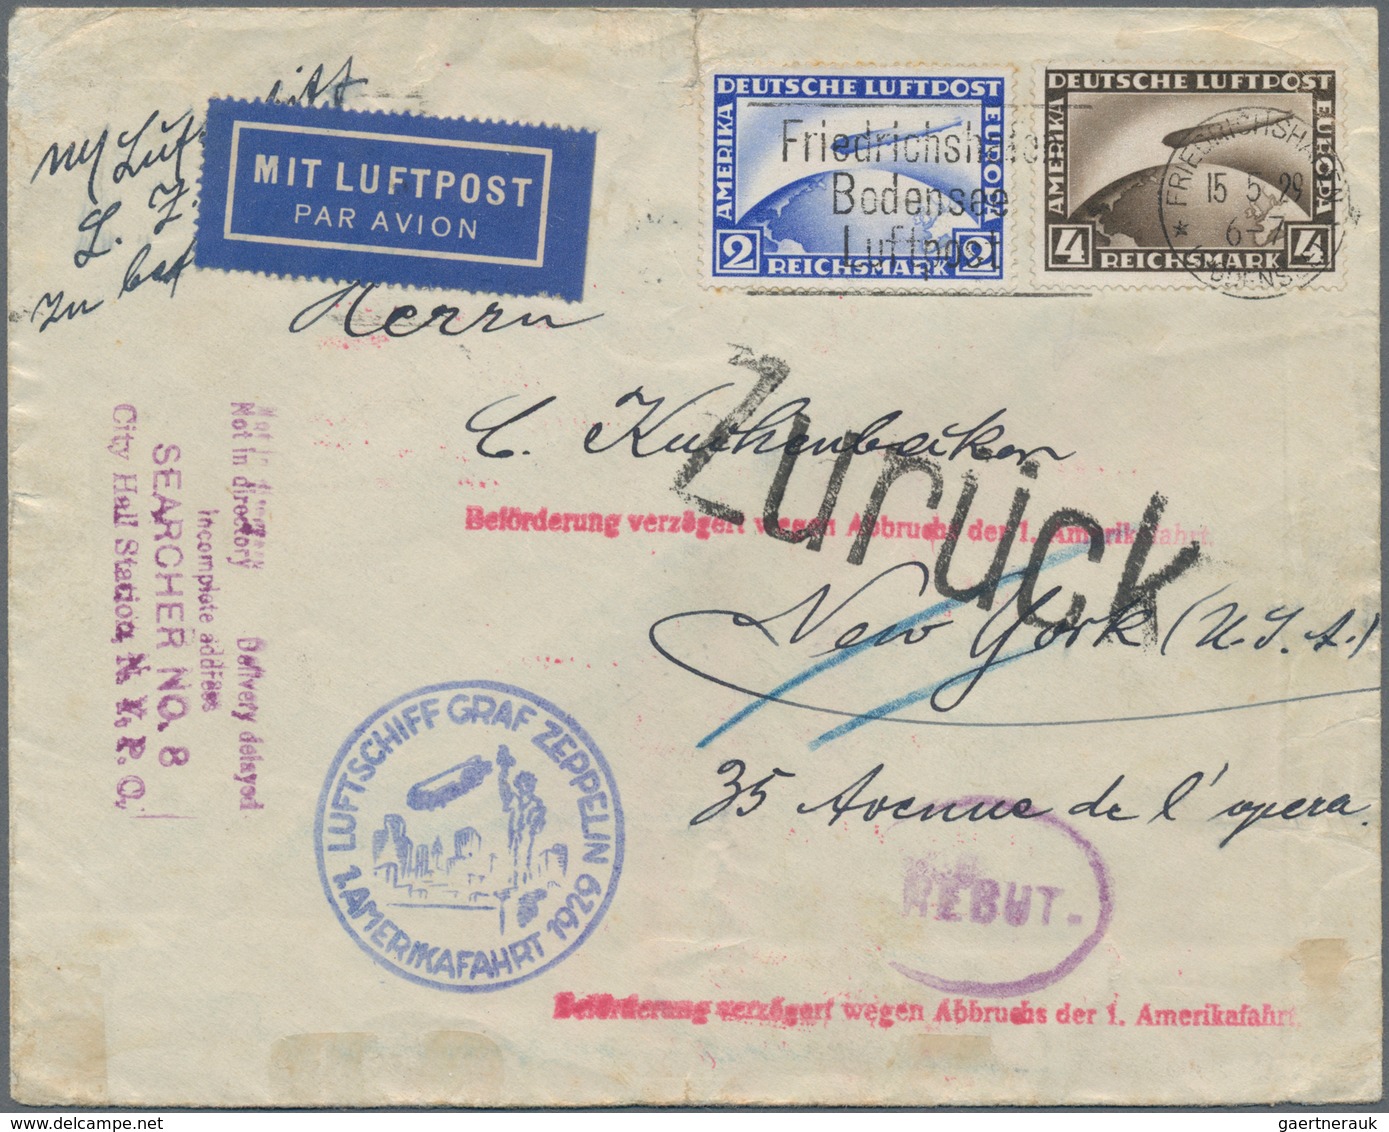 Deutschland: 1860-2015, Partie 5 Kartons mit tausenden Briefen, Karten, Ganzsachen und FDC ab Altdeu